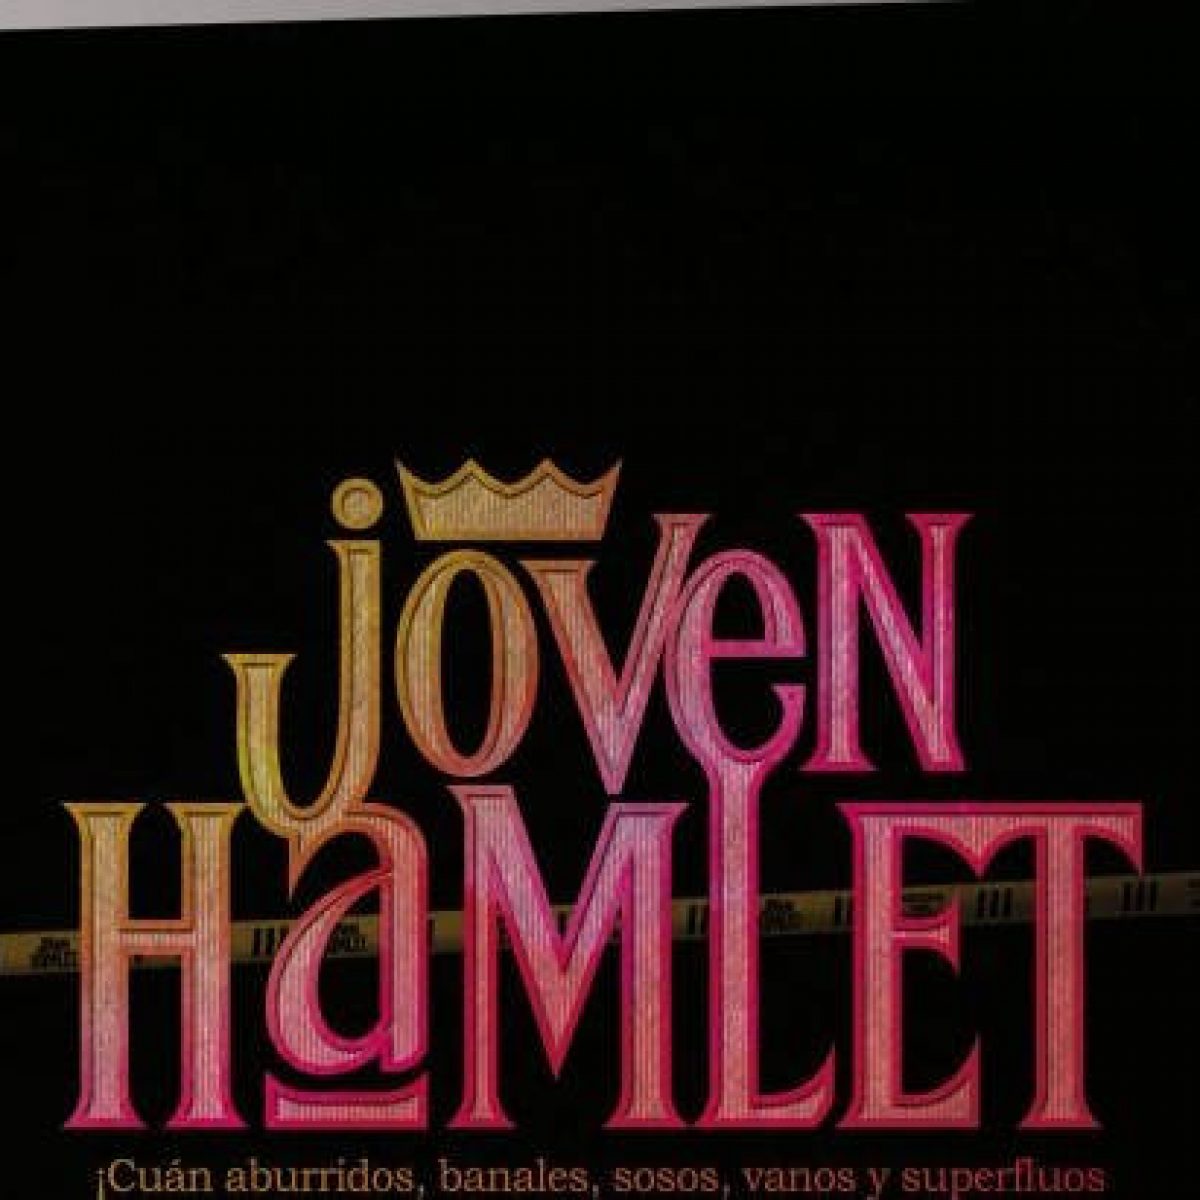 El joven Hamlet